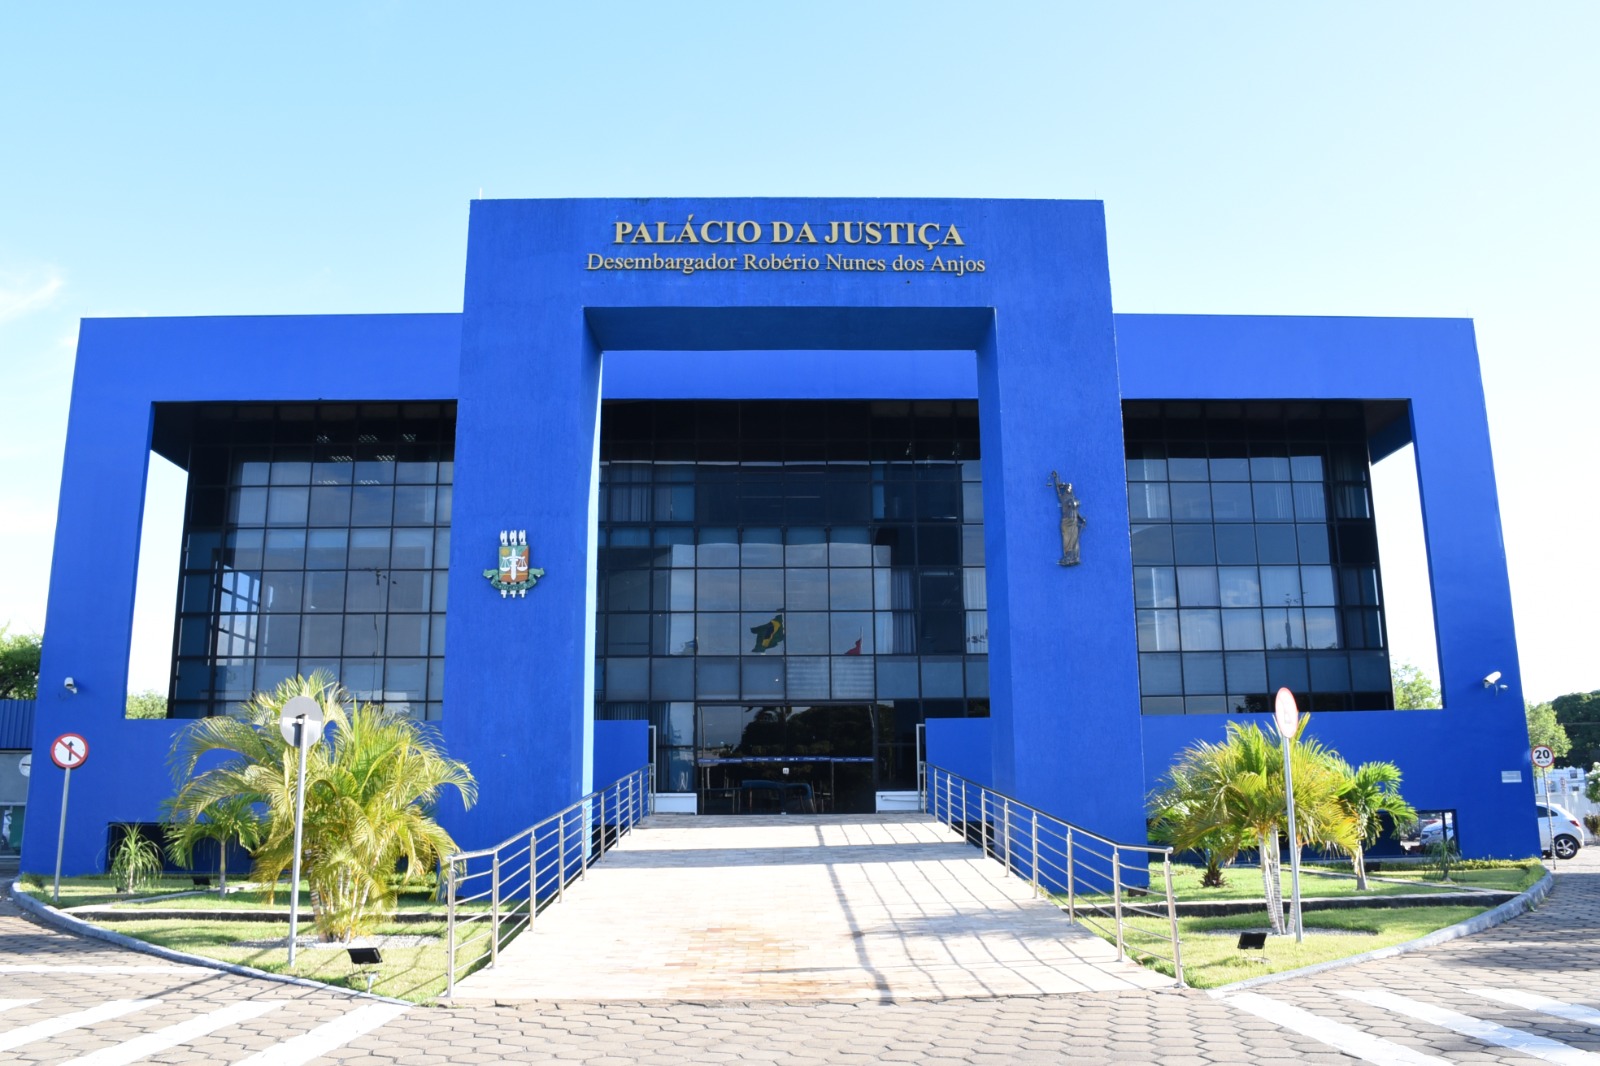 Imagem colorida mostra a fachada do prédio do Palácio da Justiça, o edifício pintado na cor azul escuro está identificado com o nome “ Estado de Roraima, Tribunal de Justiça” pintado de dourado.